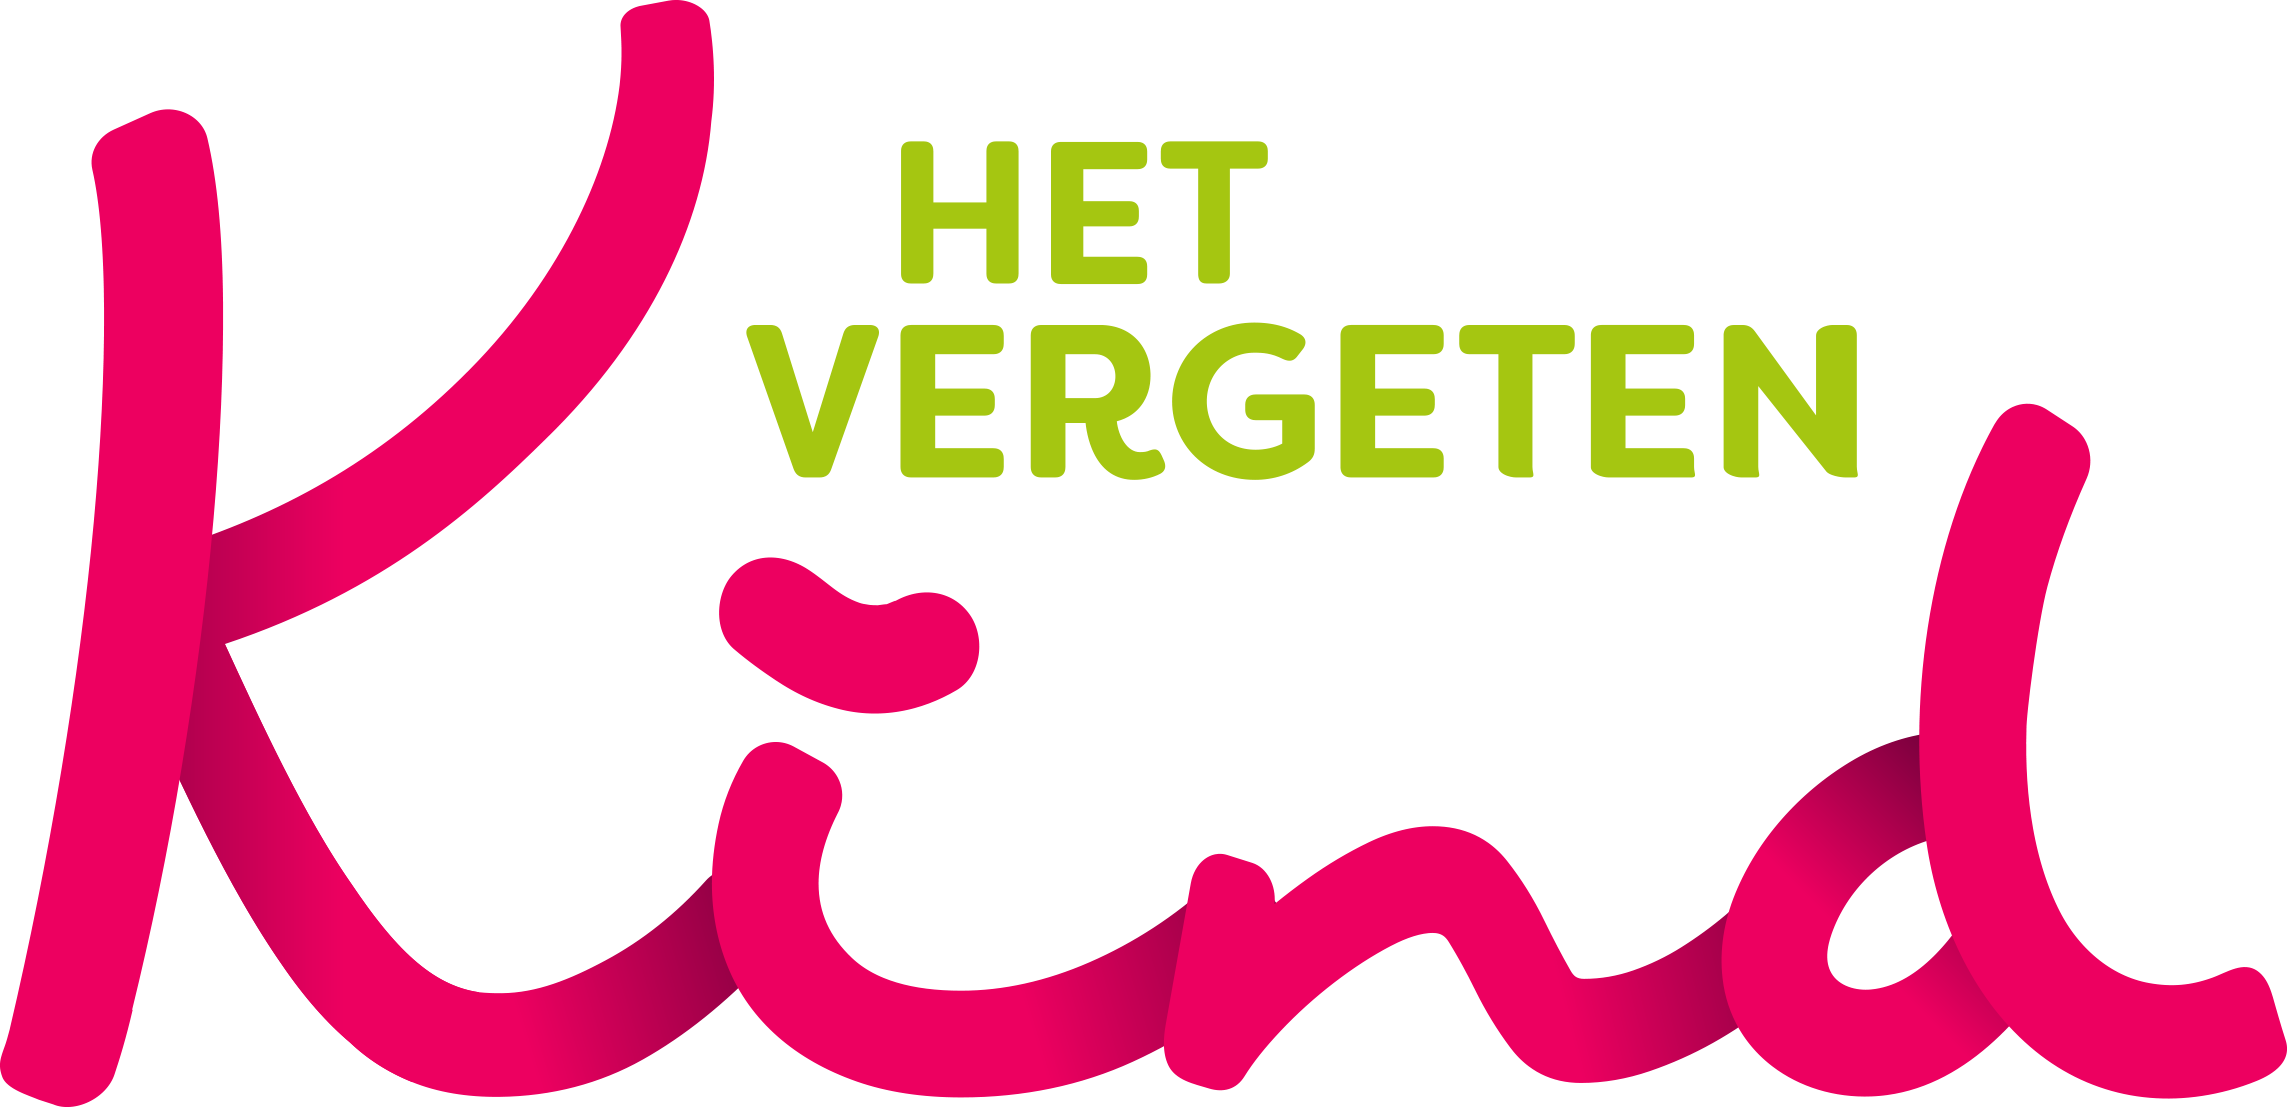 /imagecache/download/uploads/2022/07/het-vergeten-kind-logo.png